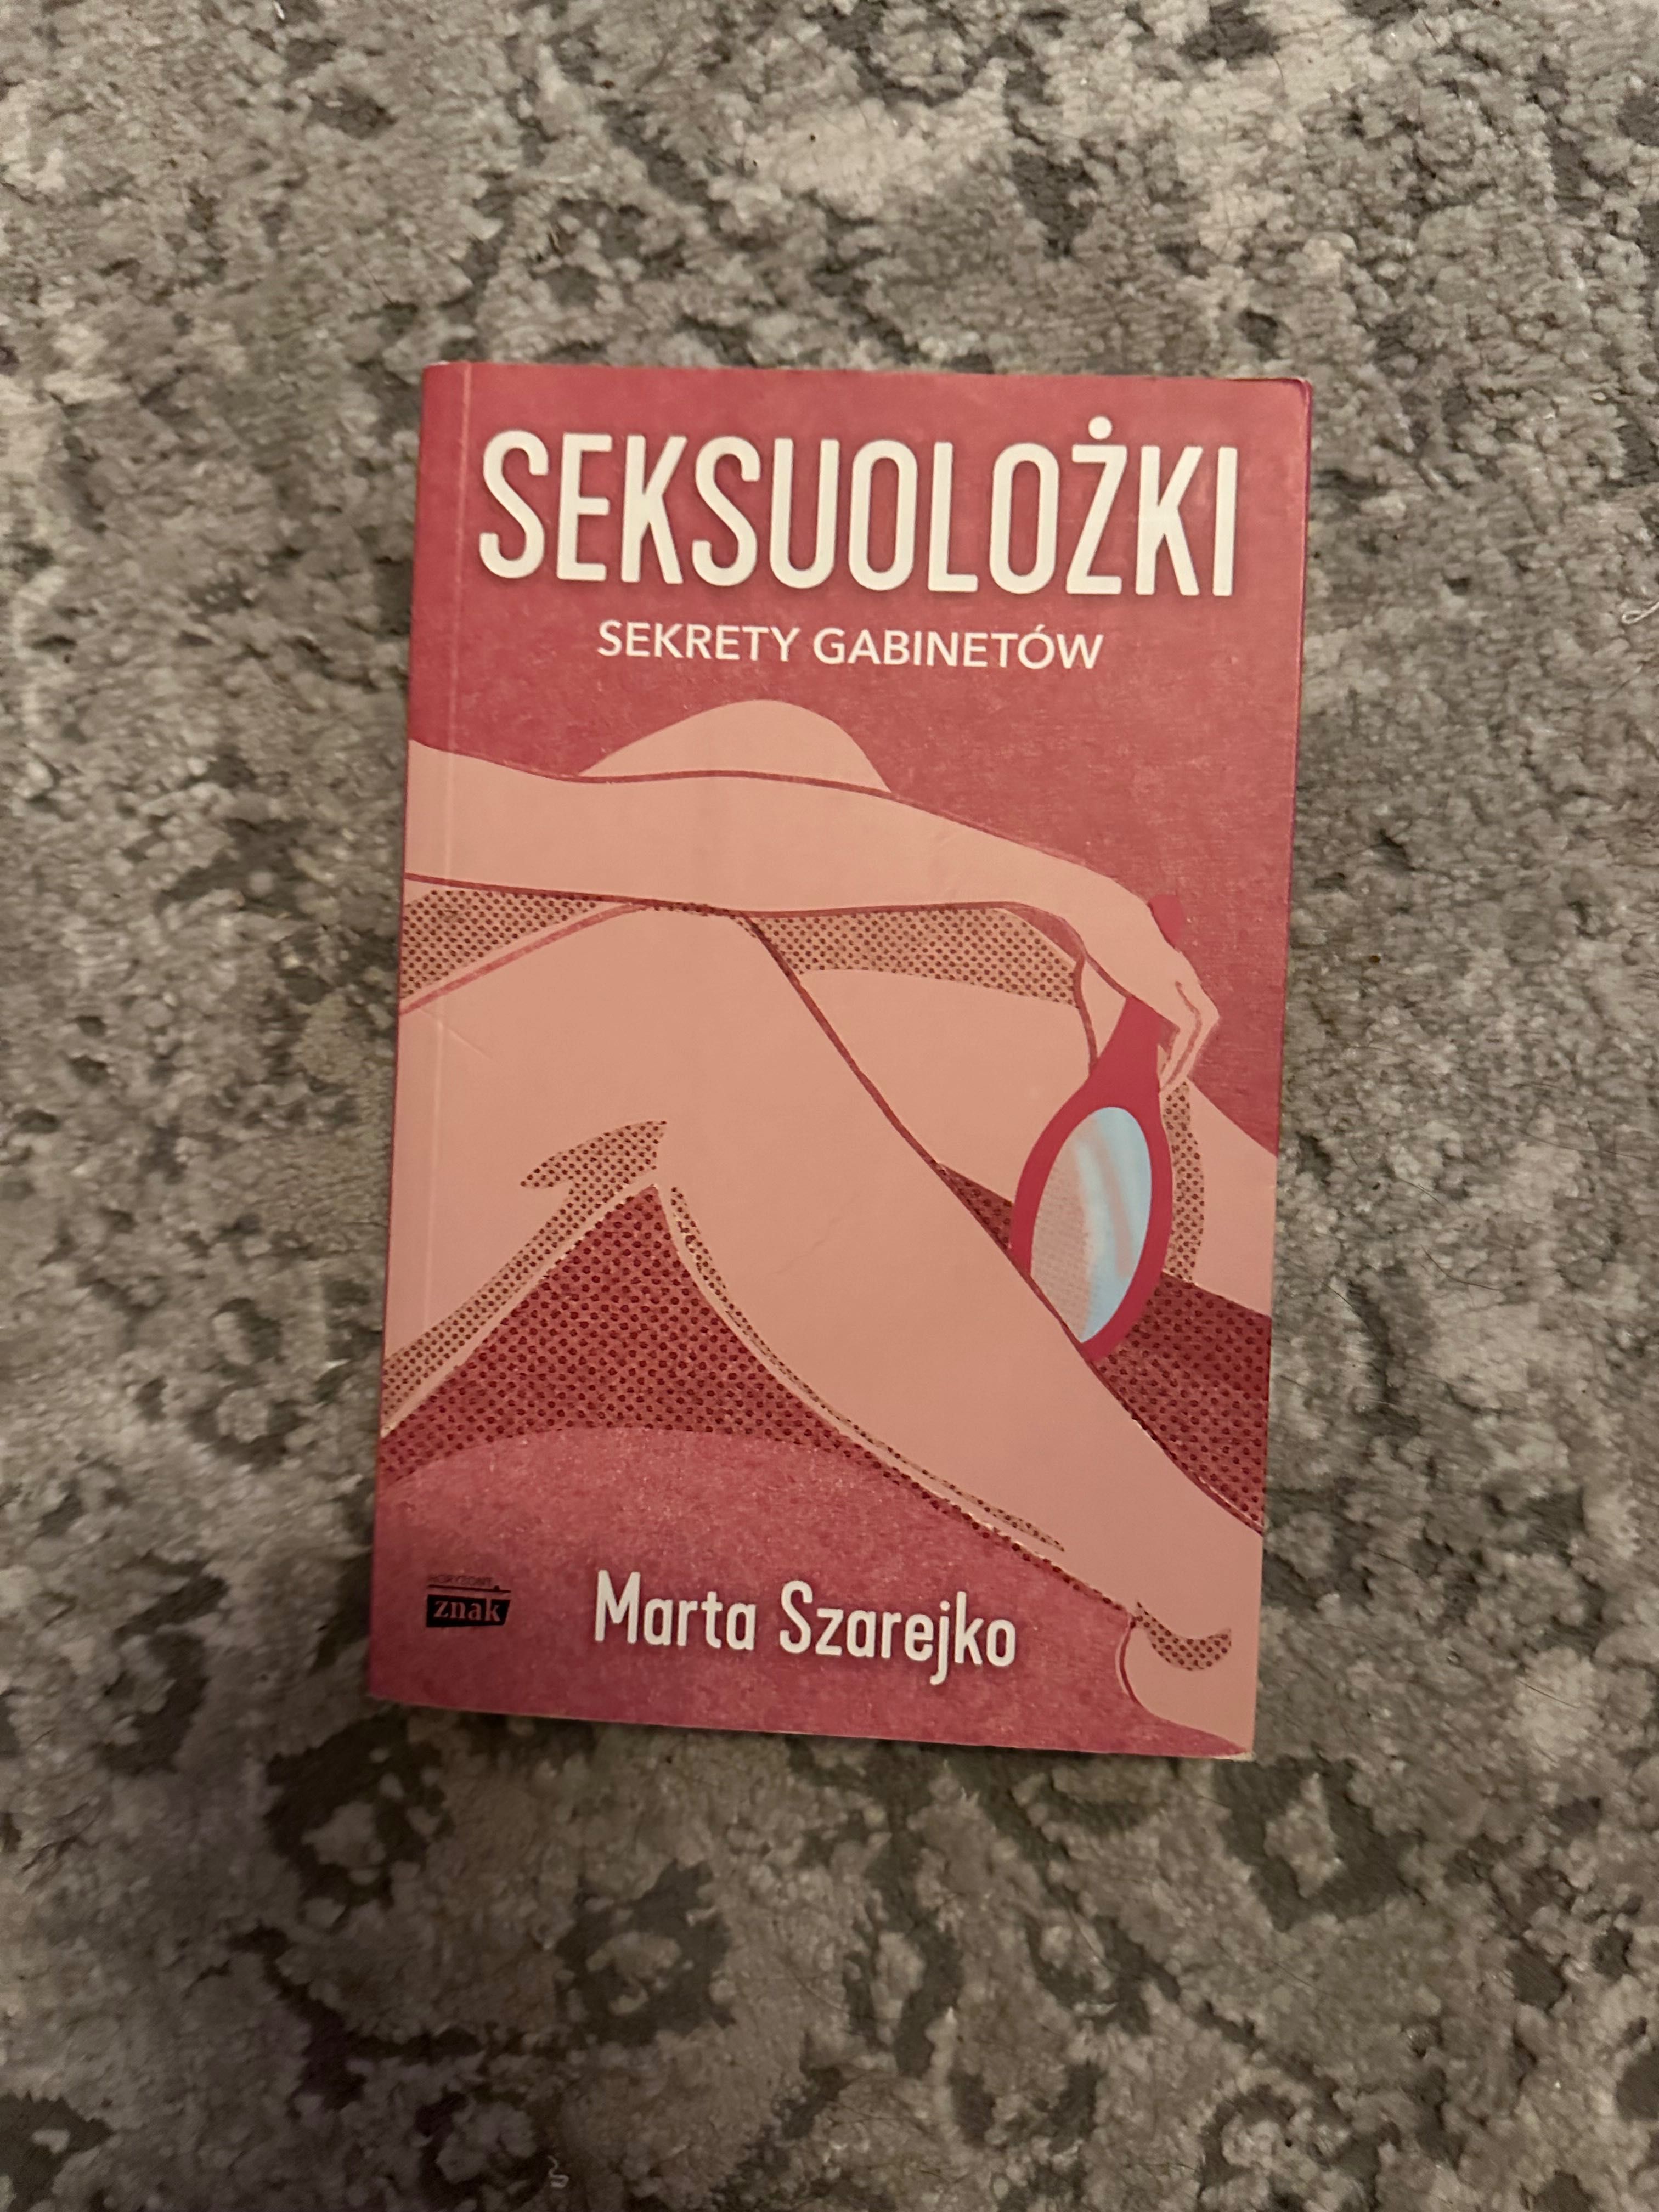 M. Szarejko "Seksuolozki"